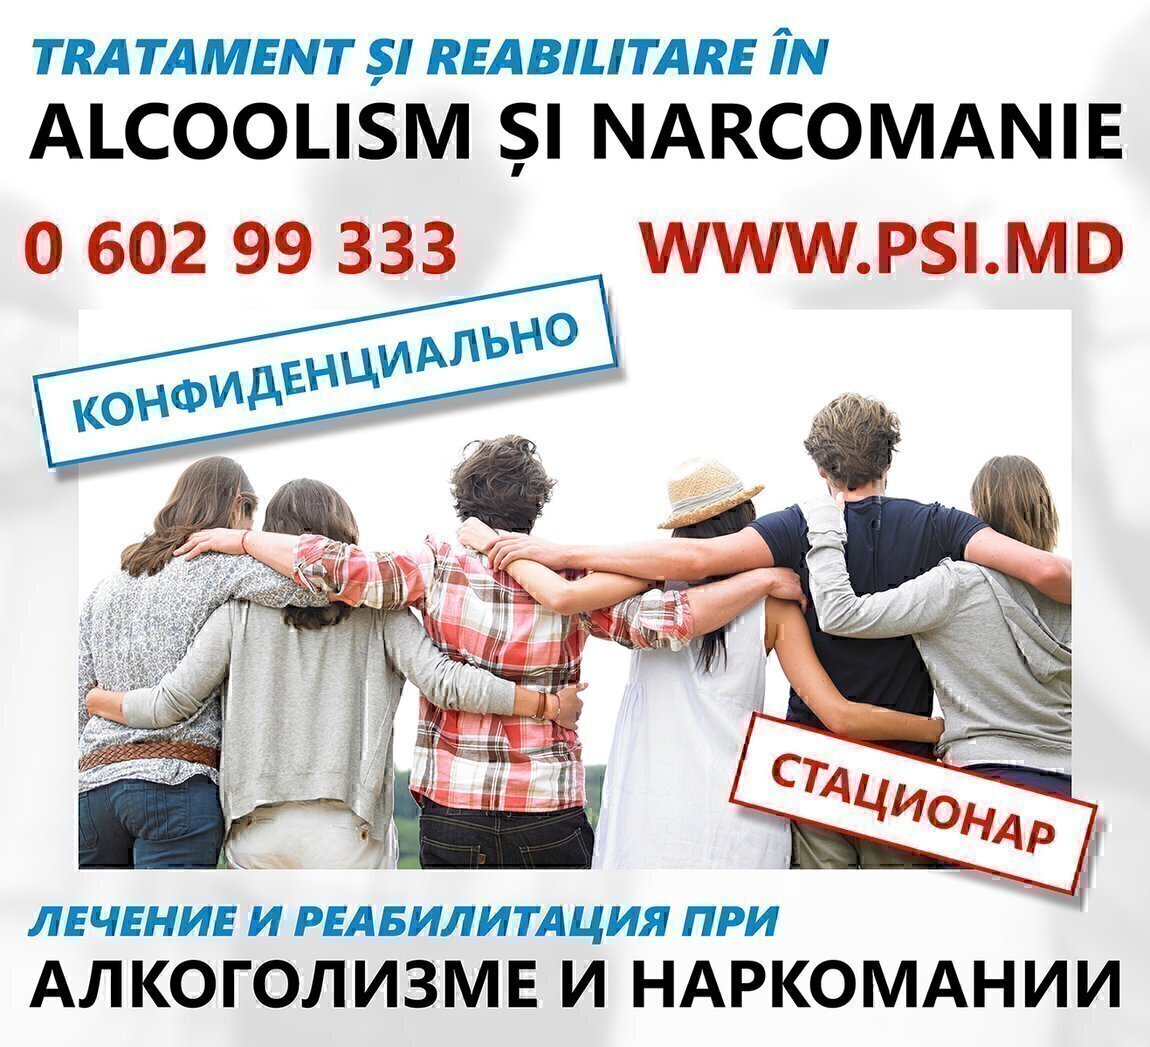 Помощь наркозависимым недорого. Помощь алкозависимым наркозависимым. Реклама помощь наркозависимым и алкозависимым. Реабилитация наркозависимых и алкозависимых визитка. Помощь алкозависимым фото.